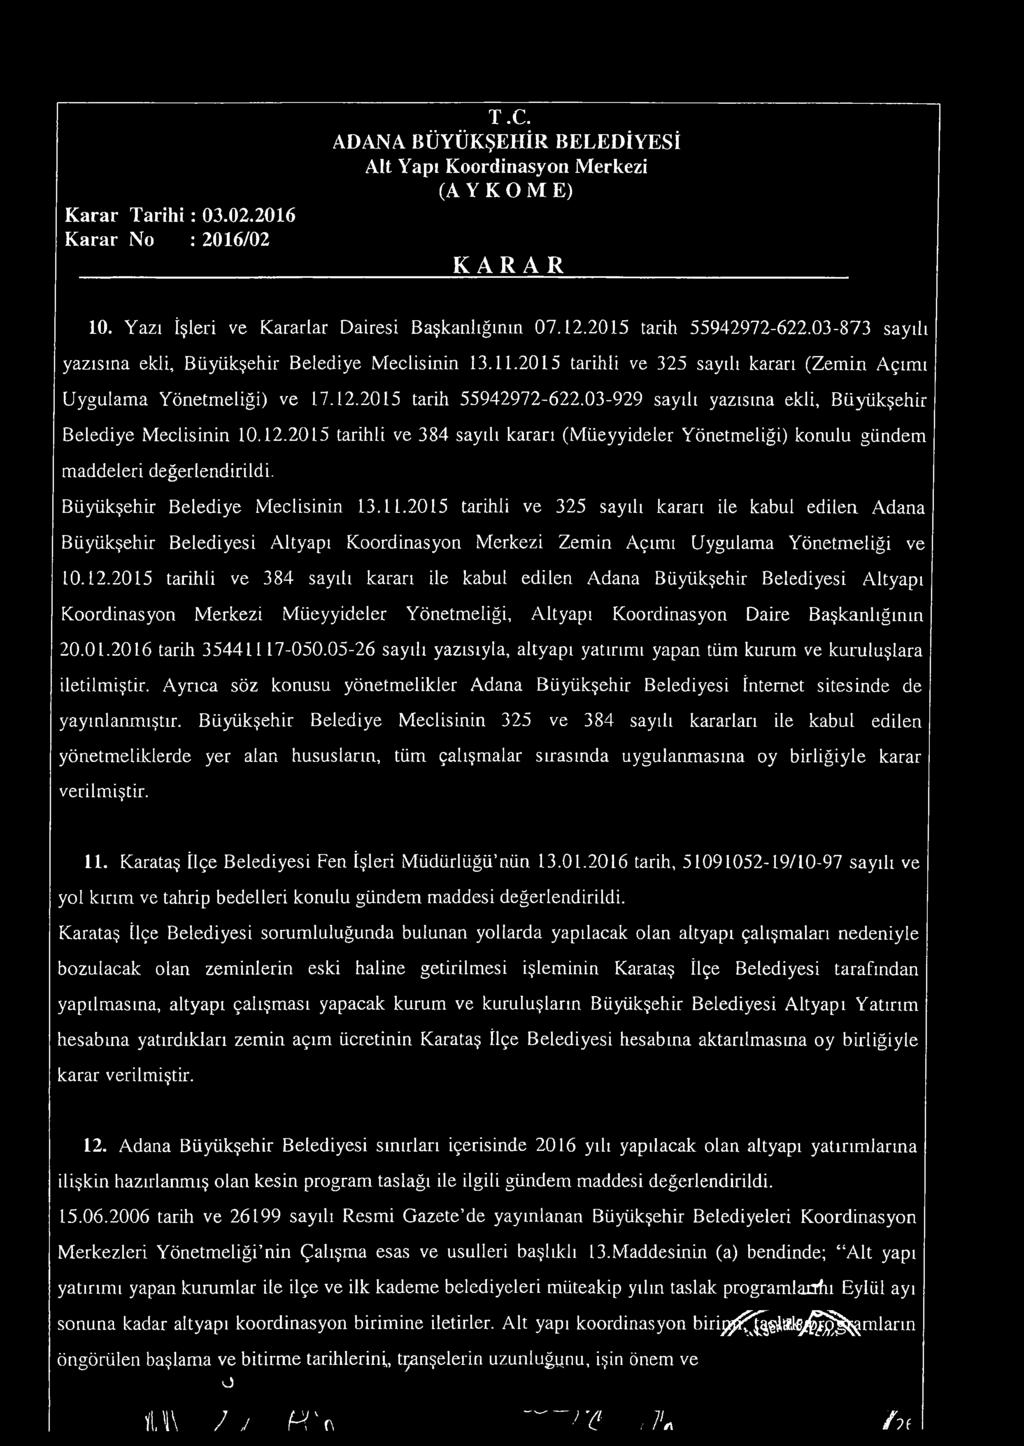 3-929 sayılı yazısına ekli, Büyiikşehir Belediye Meclisinin 1.12.215 tarihli ve 384 sayılı kararı (Müeyyideler Yönetmeliği) konulu gündem maddeleri değerlendirildi. Büyükşehir Belediye Meclisinin 13.